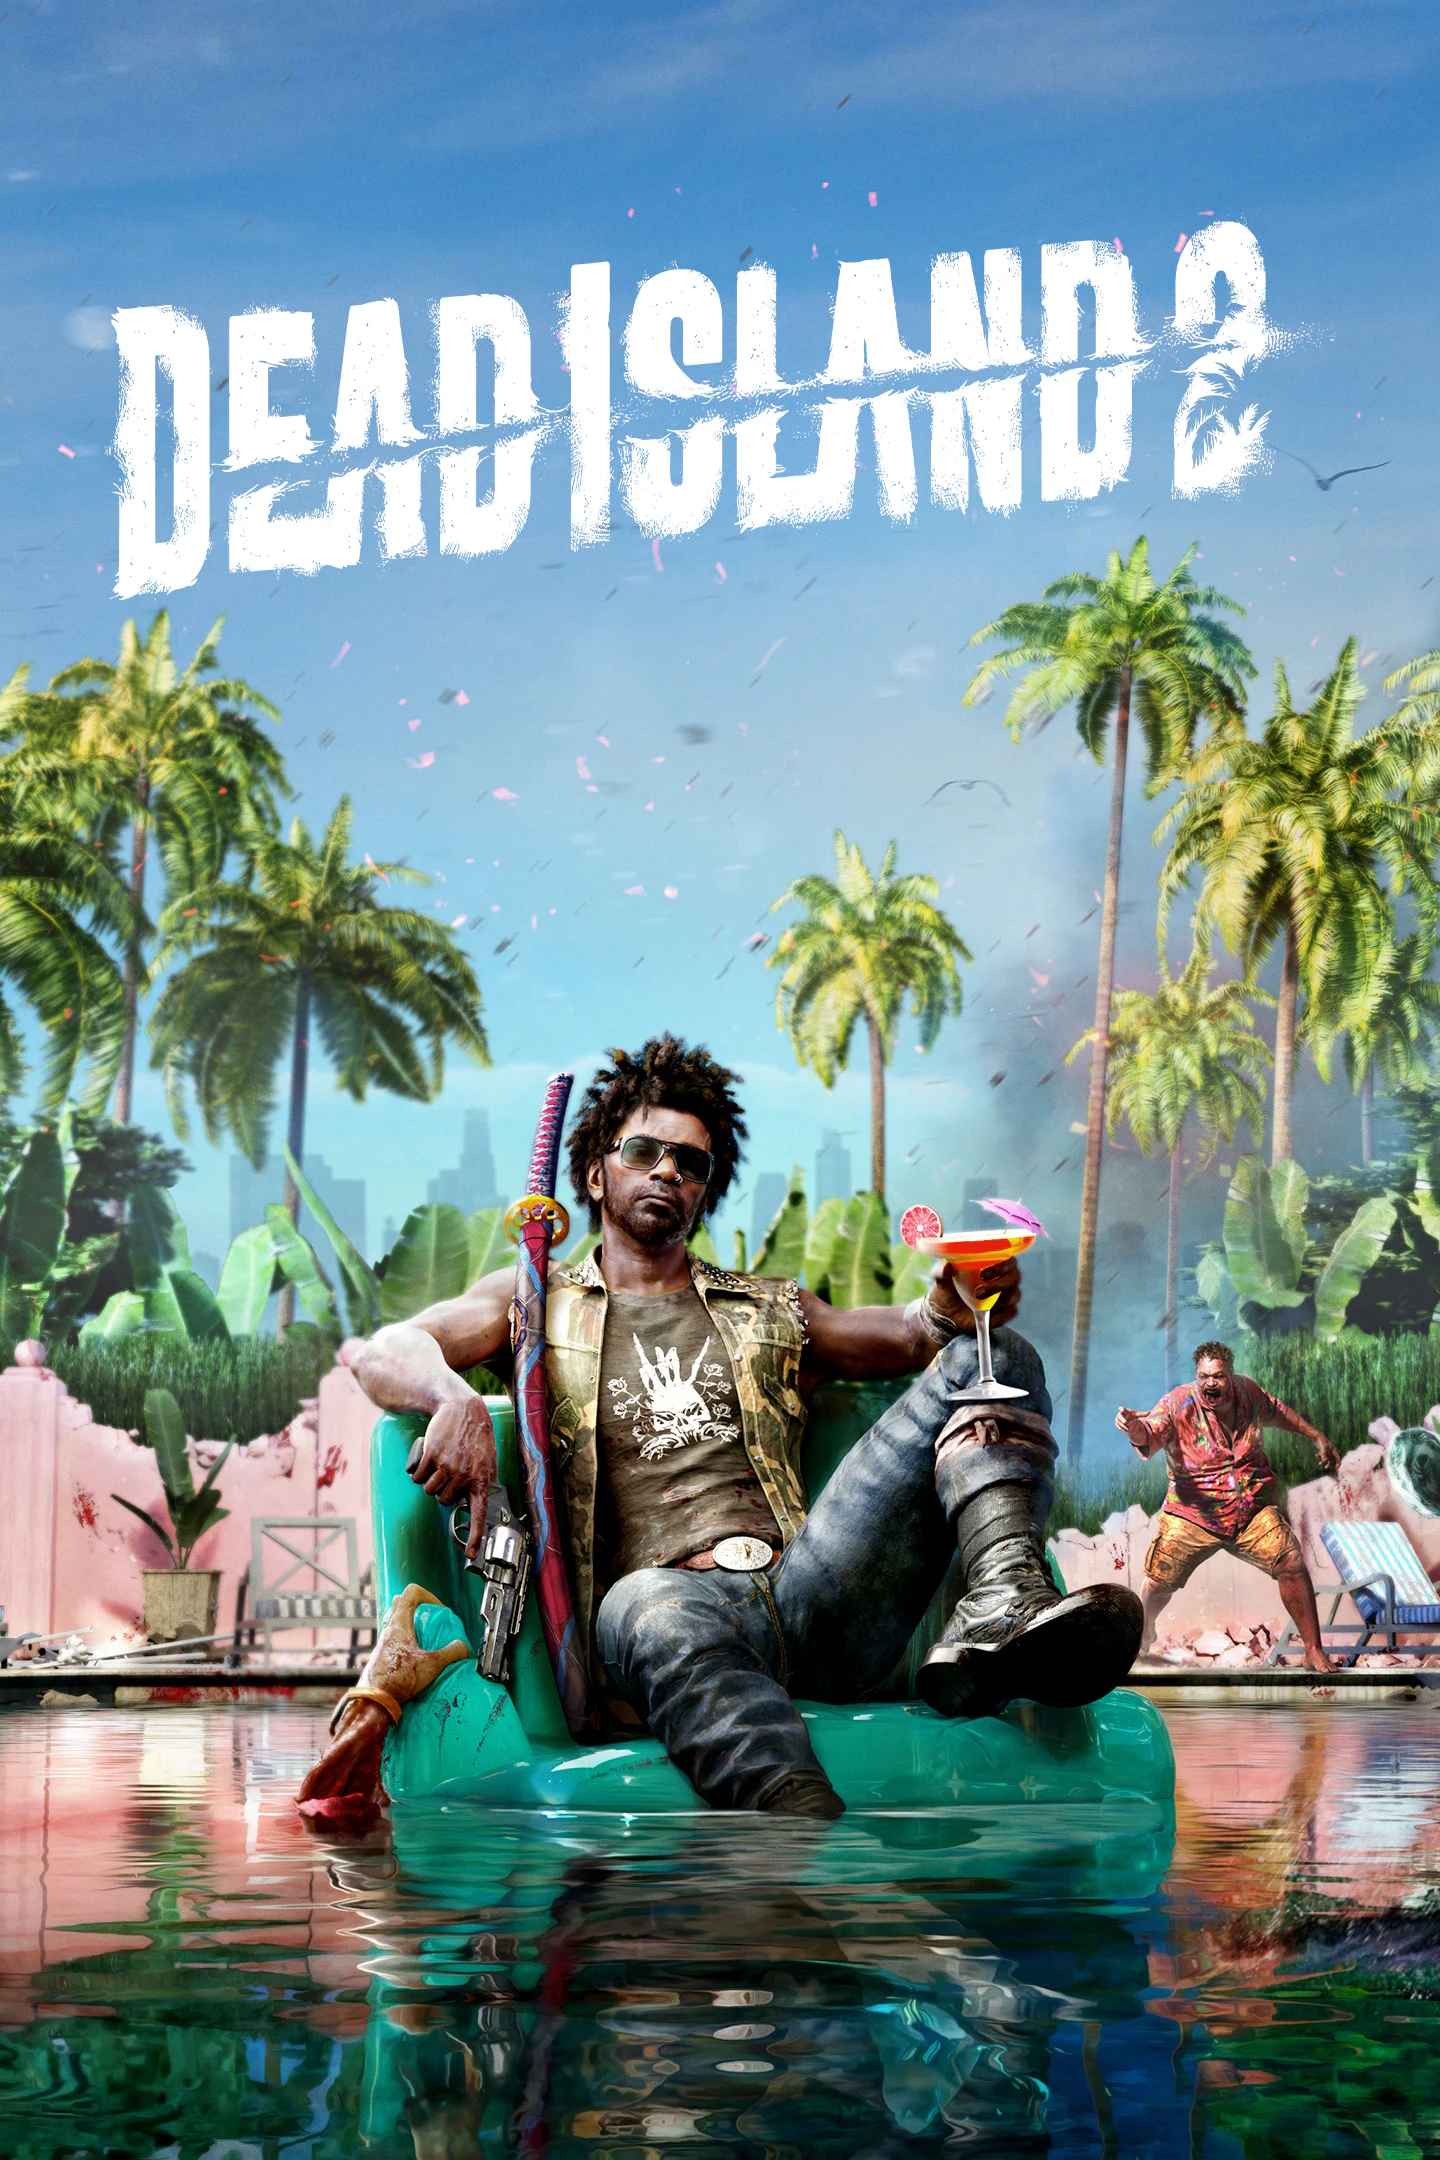 jaquette reduite de Dead Island 2 sur PC